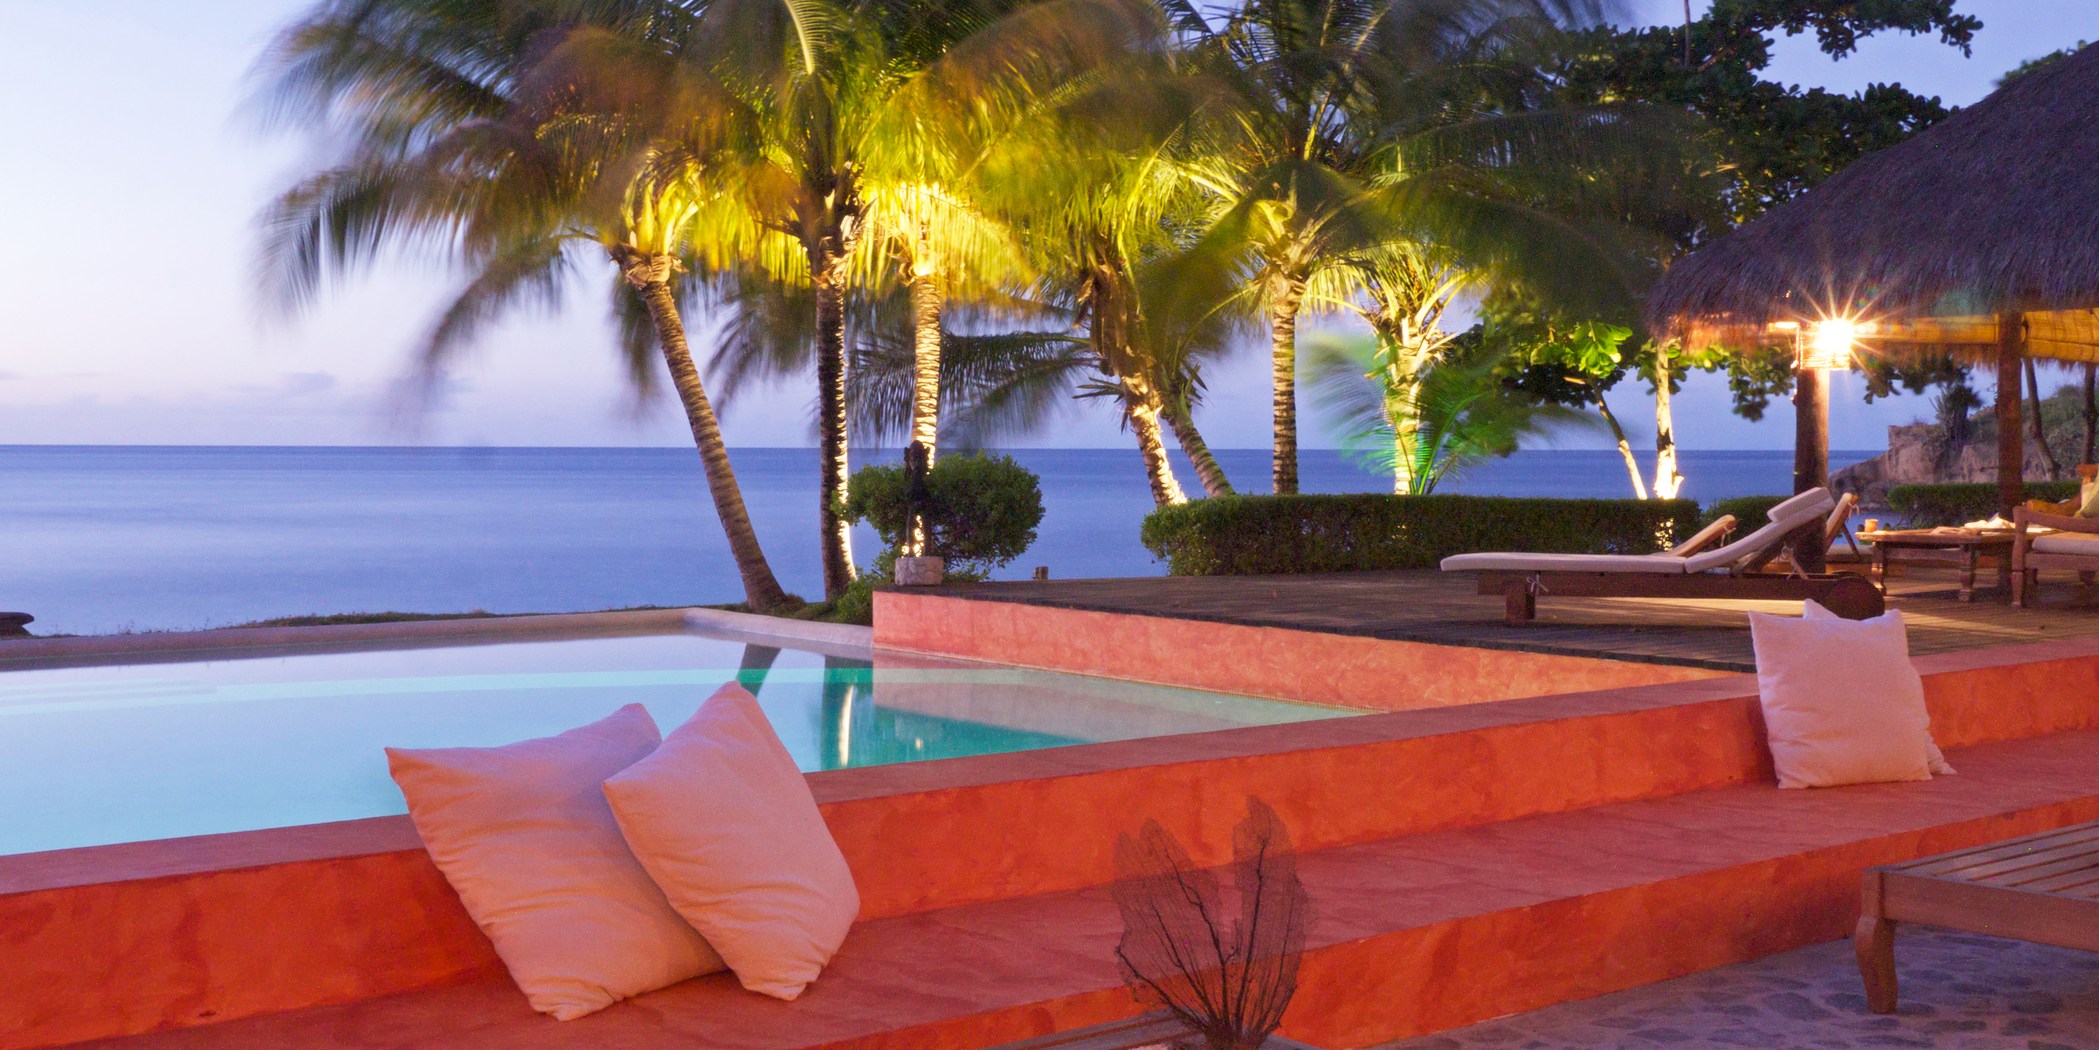 Pool at night at Laluna, Grenada